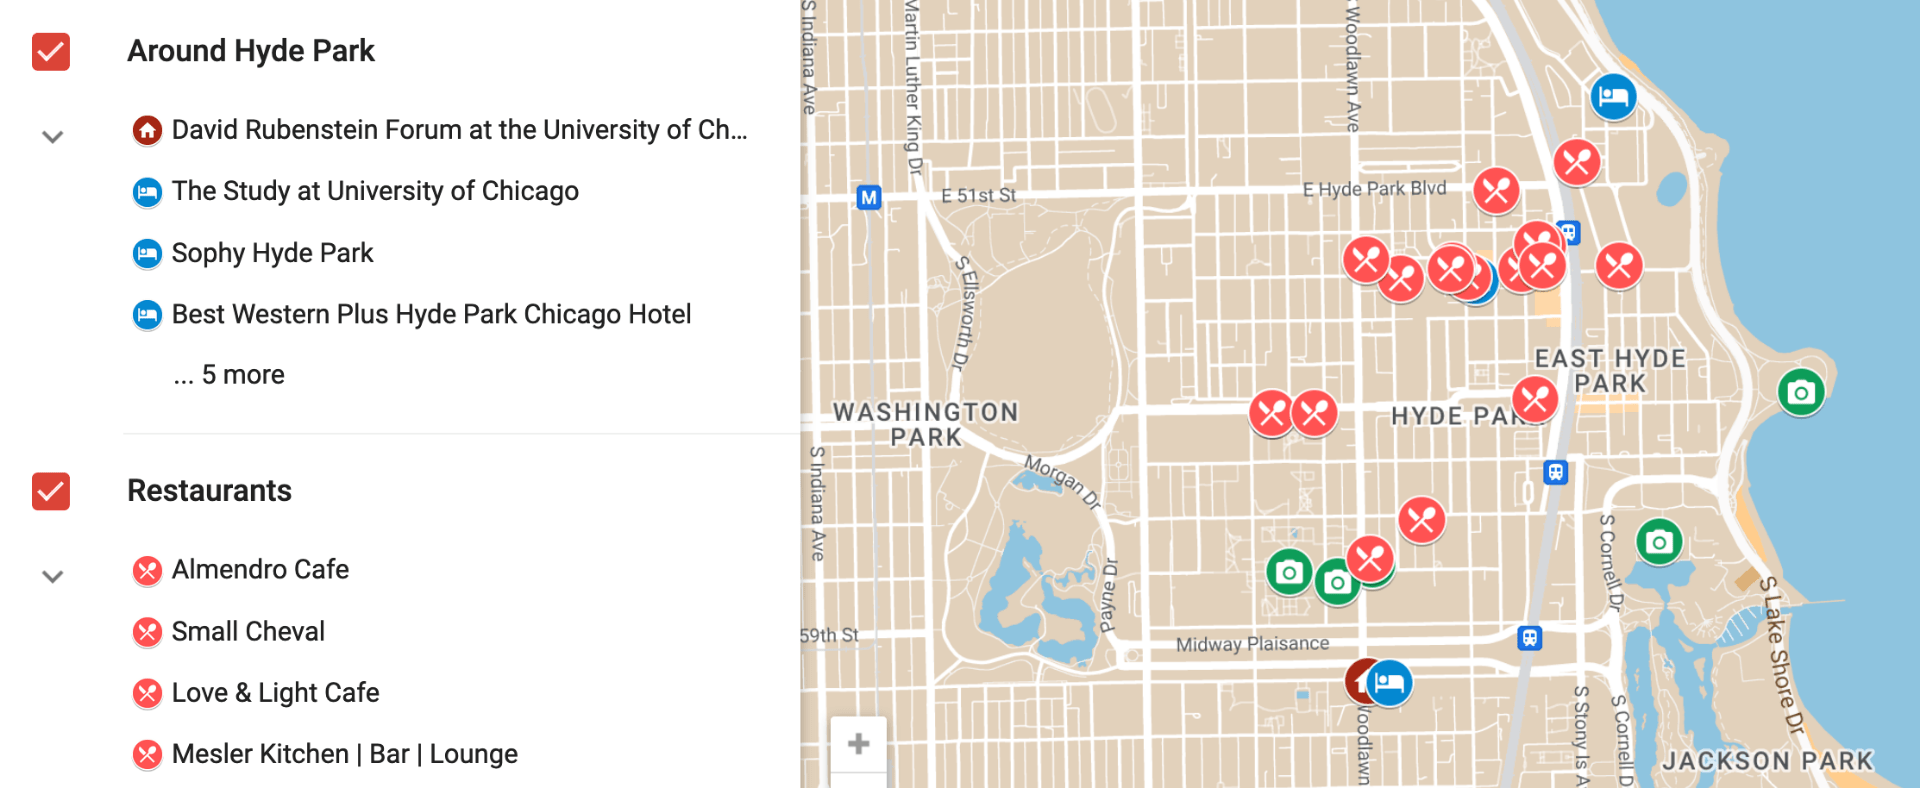 Image/link for map of Hyde Park restaurants